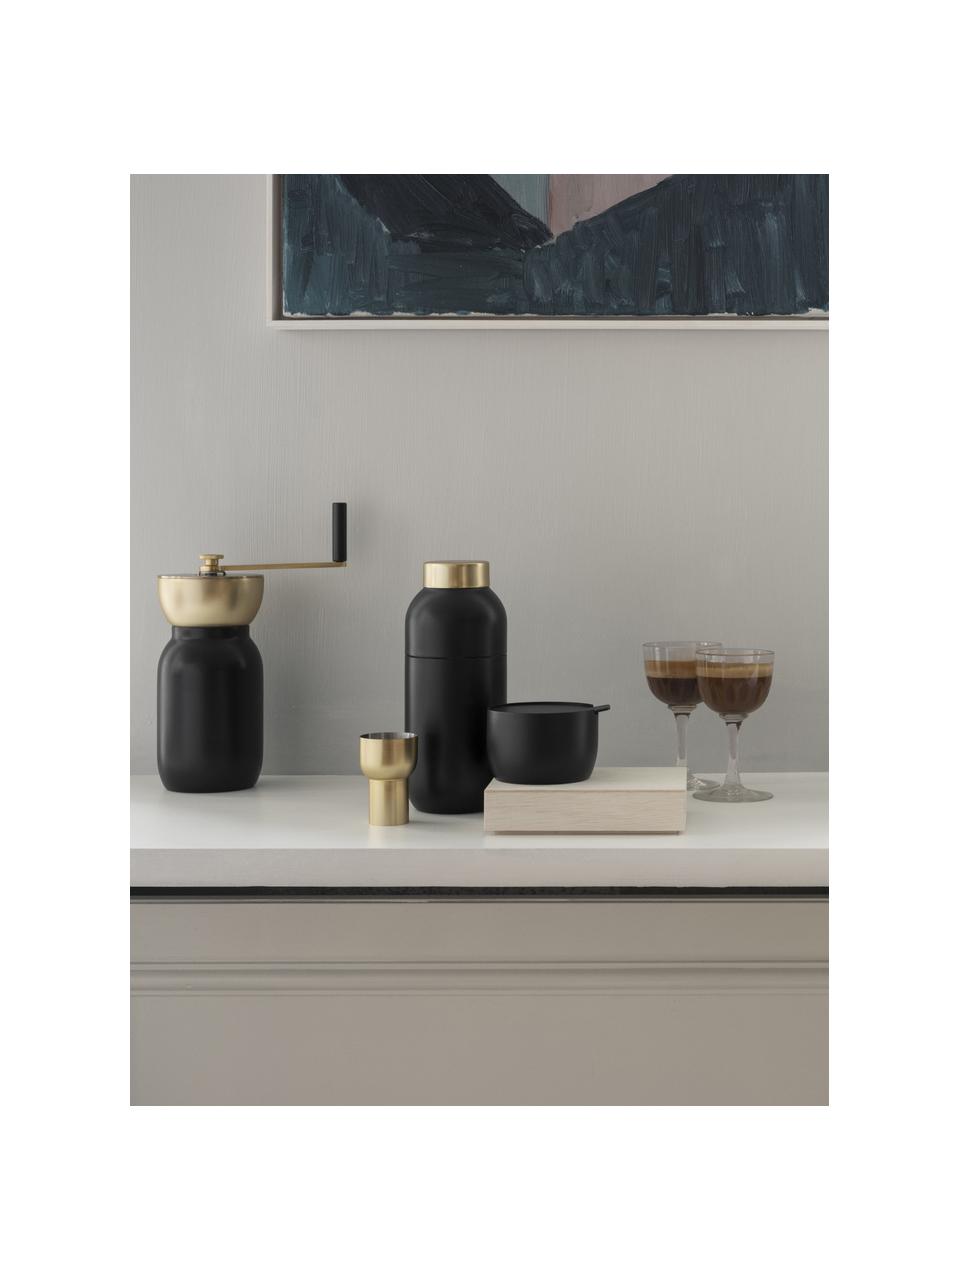 Koffiemolen Collar in zwart/goudkleurig, Edelstaal met teflon coating, messing, Zwart, Ø 10 x H 18 cm